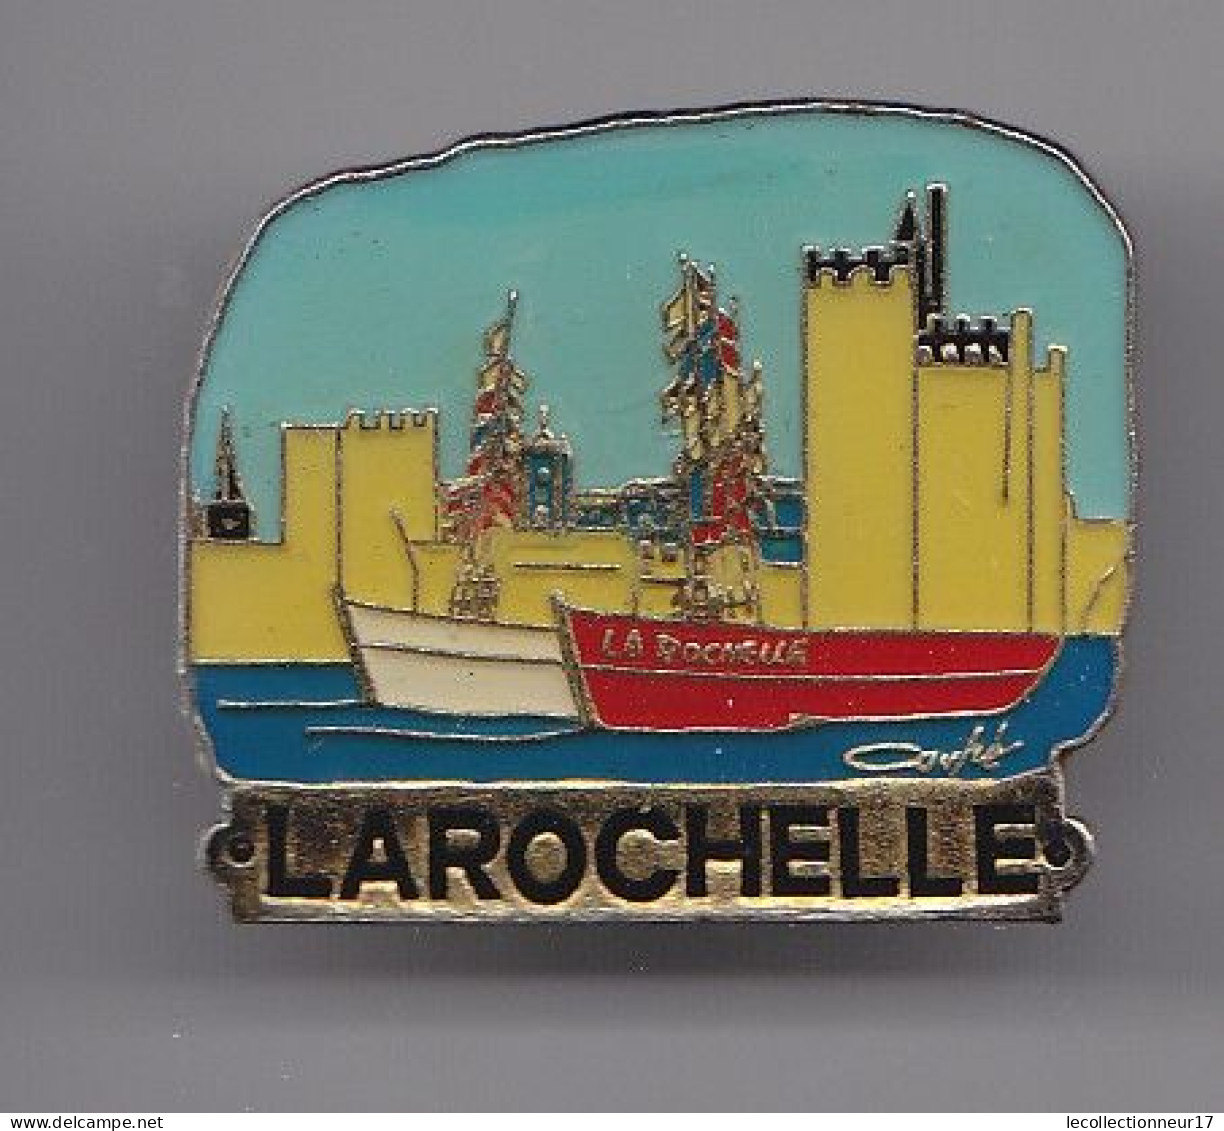 Pin's La Rochelle En Charente Maritime Dpt 17 Bateaux Réf 5621 - Villes